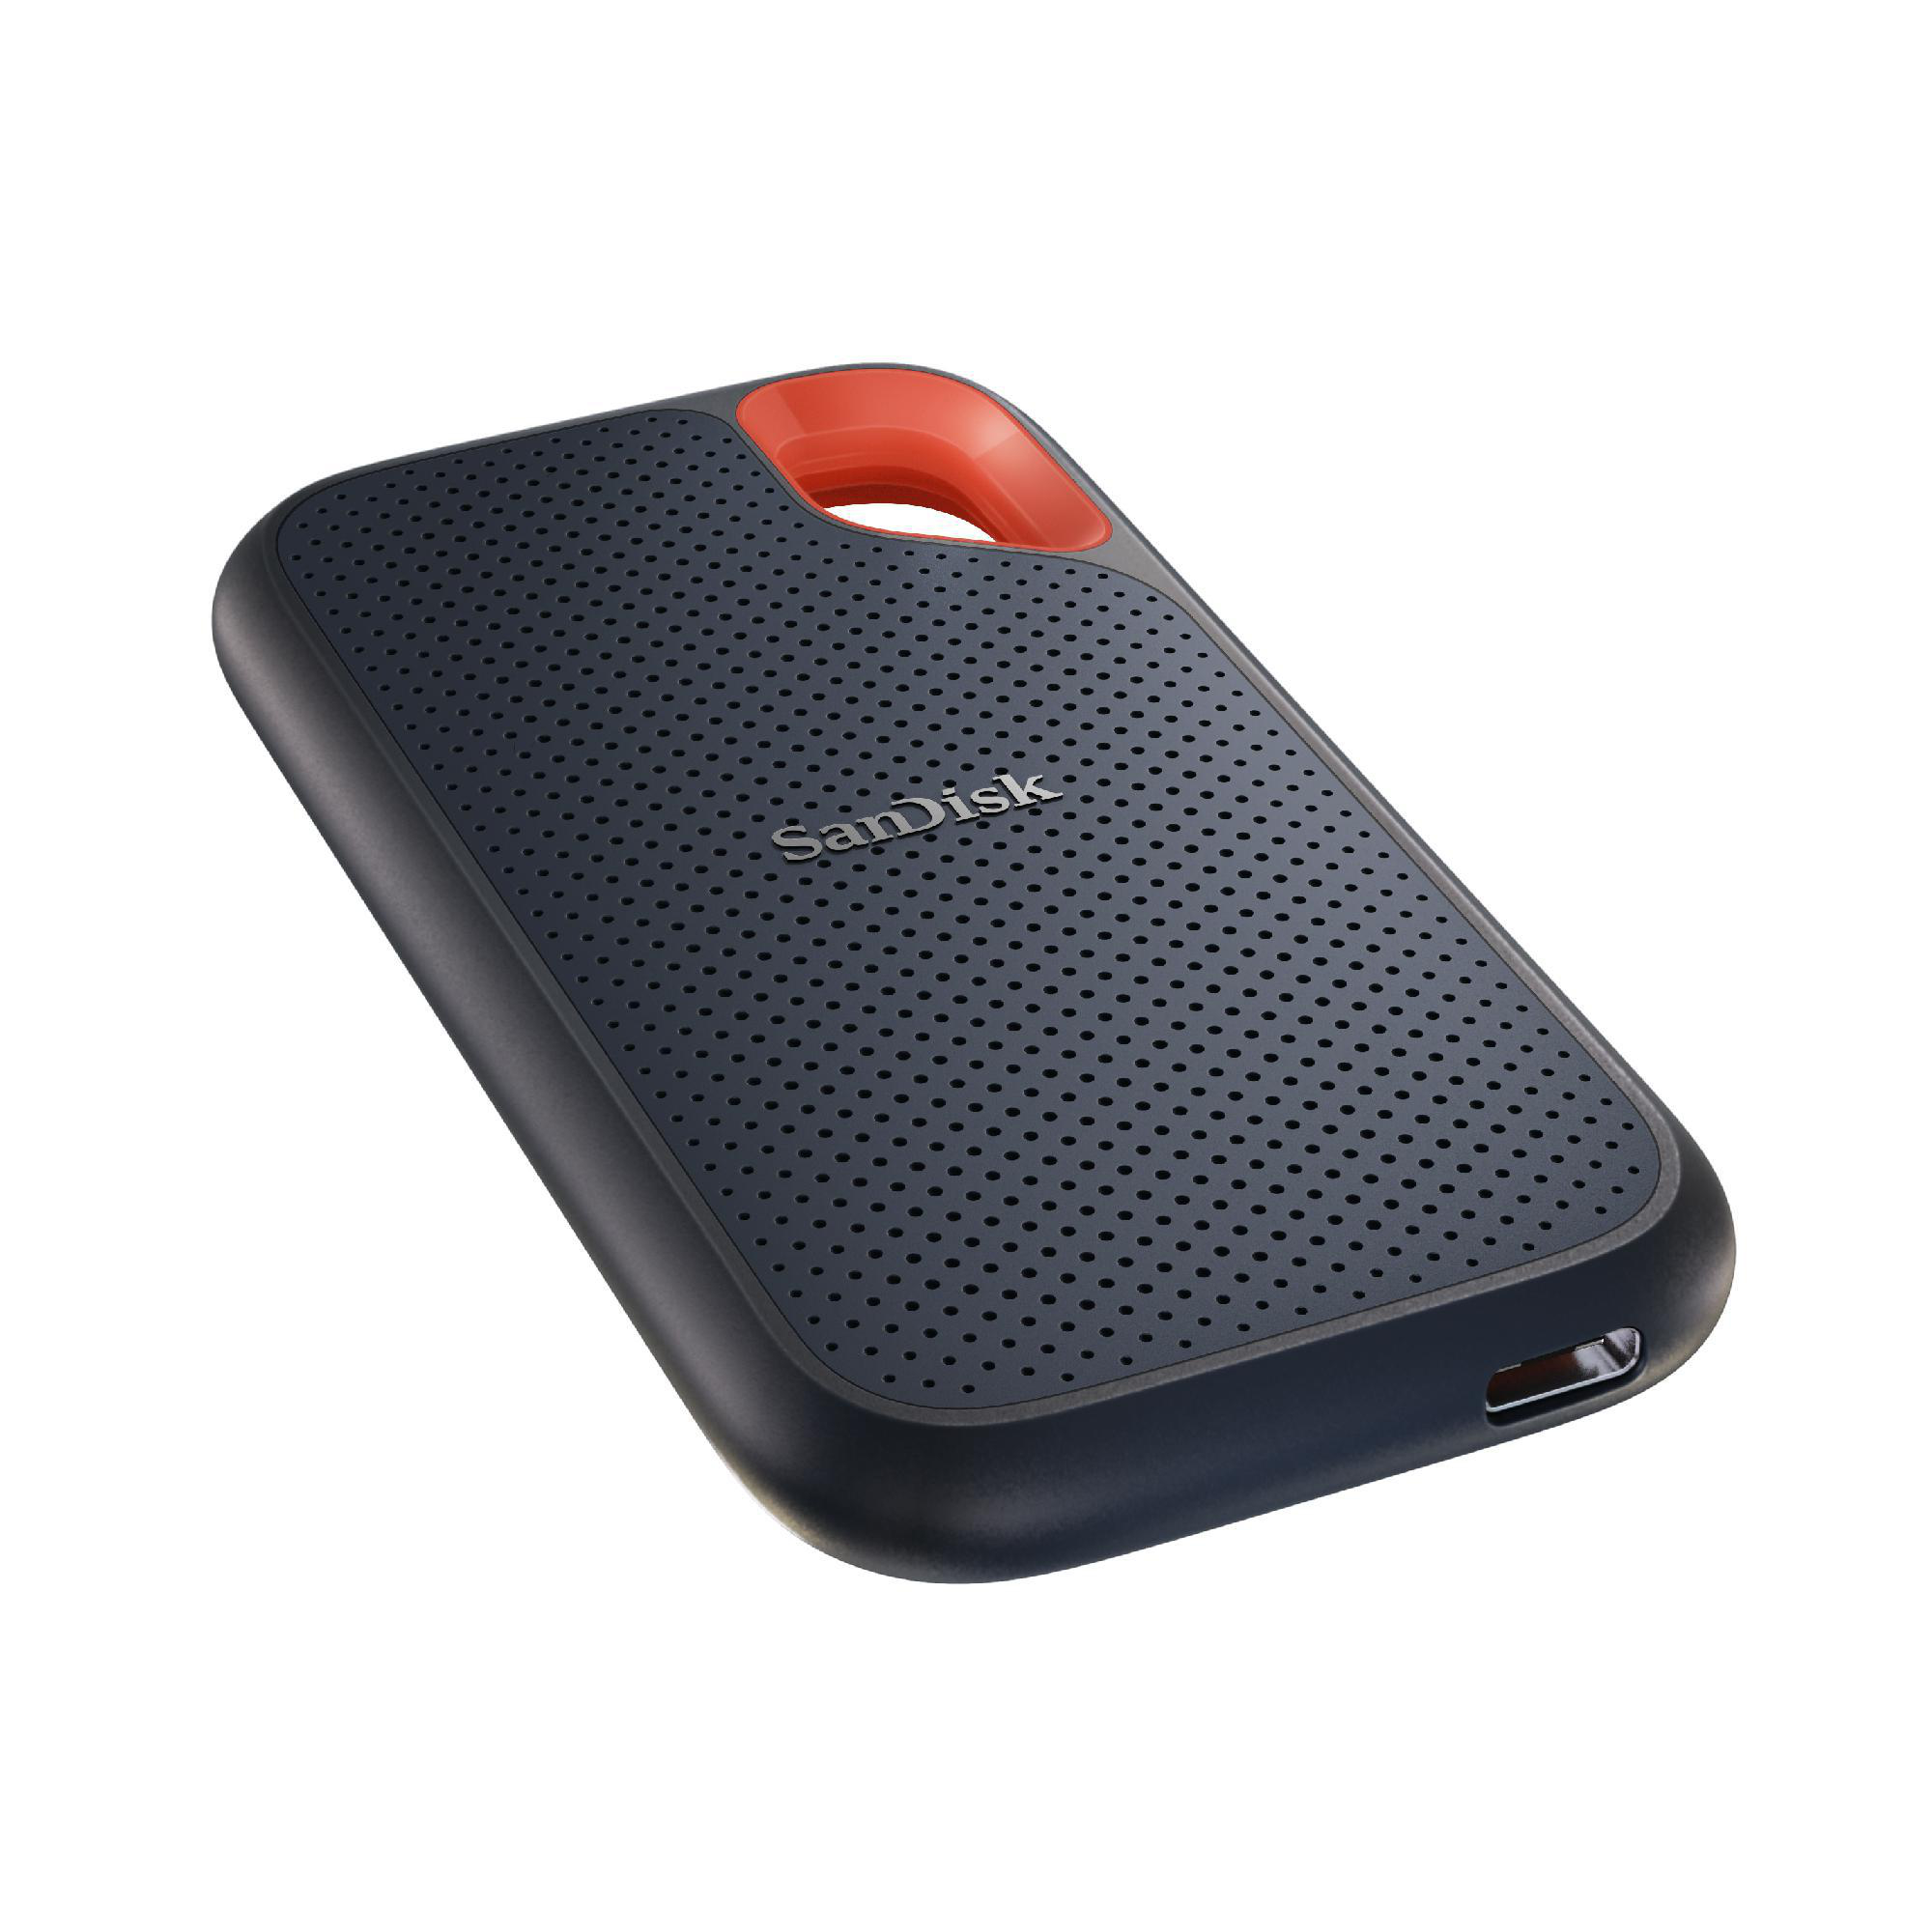 SANDISK Extreme Portable Speicher, 500 GB SSD, extern, Grau/Orange